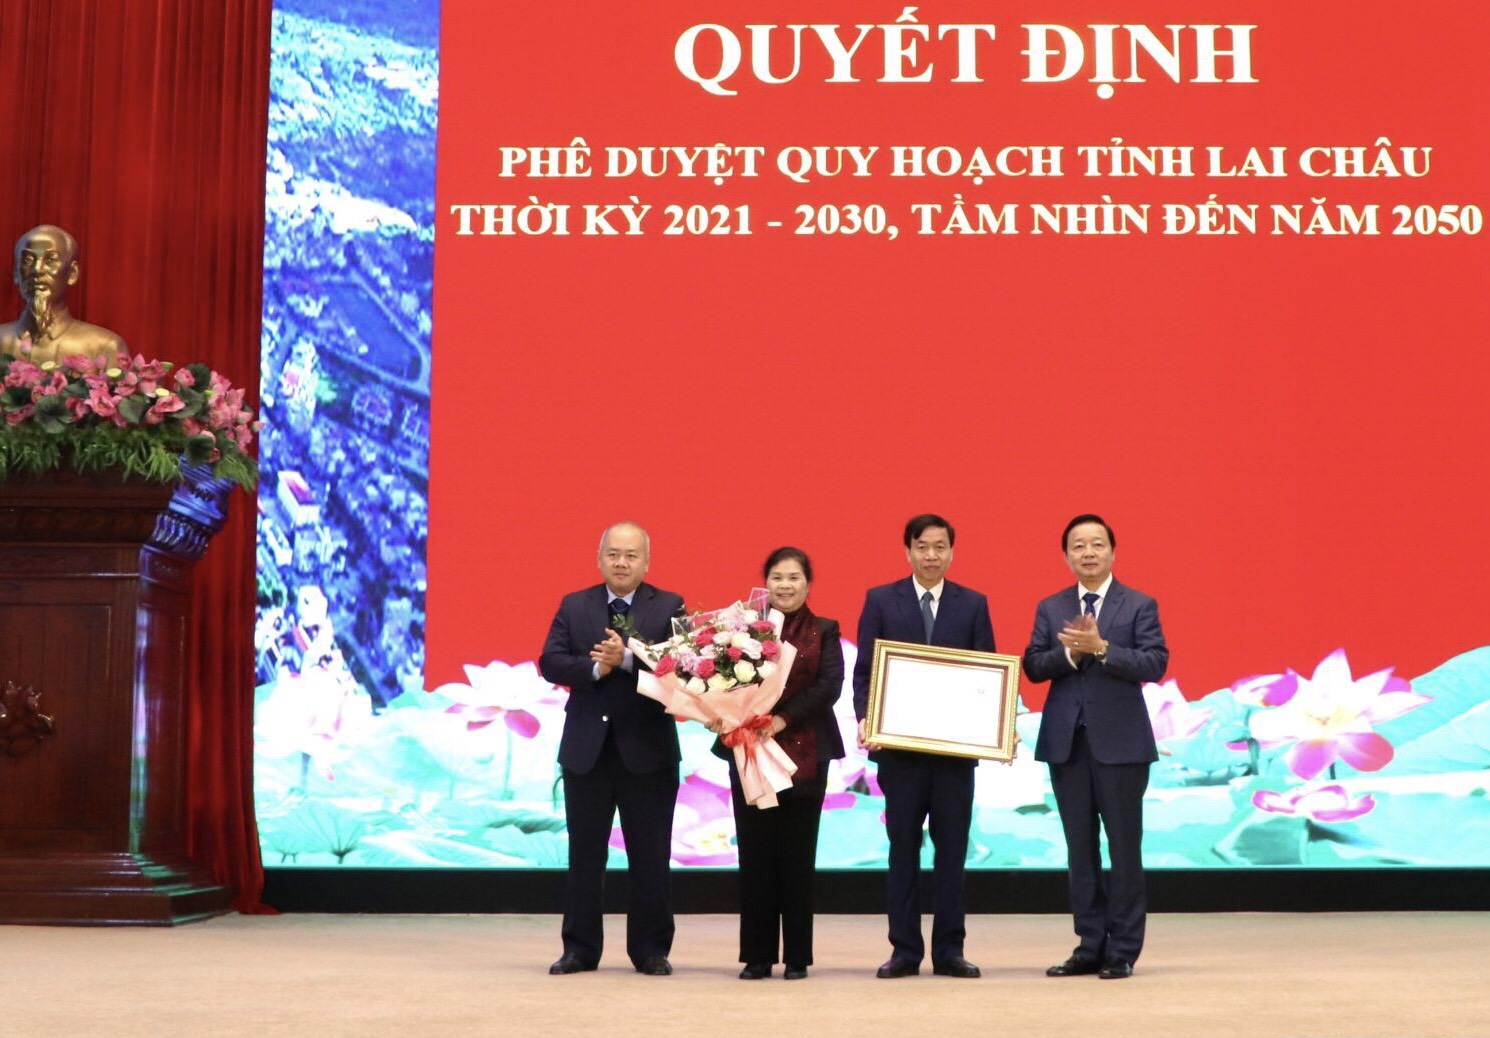 Phó Thủ tướng Chính phủ Trần Hồng Hà, Thứ trưởng Bộ Kế hoạch và Đầu tư Đỗ Thành Trung trao Quyết định Phê duyệt Quy hoạch tỉnh Lai Châu thời kỳ 2021 - 2030, tầm nhìn đến năm 2050 cho lãnh đạo tỉnh Lai Châu.